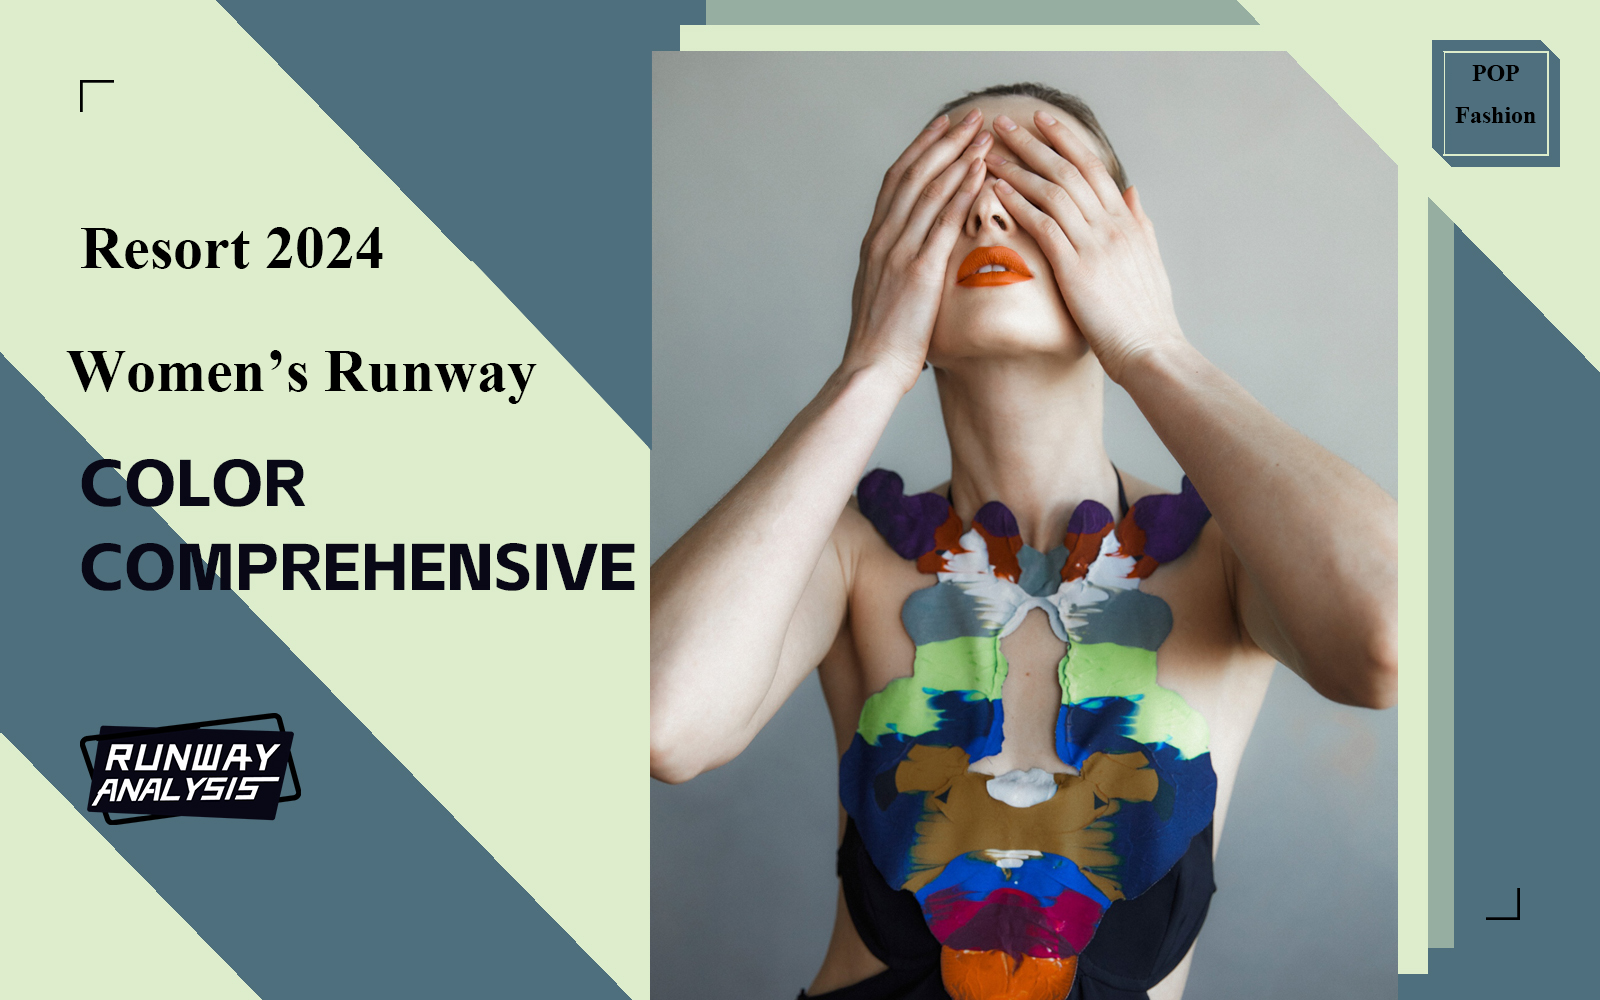 Resort 2024 Comprehensive Color Analysis of Women's Runway Show